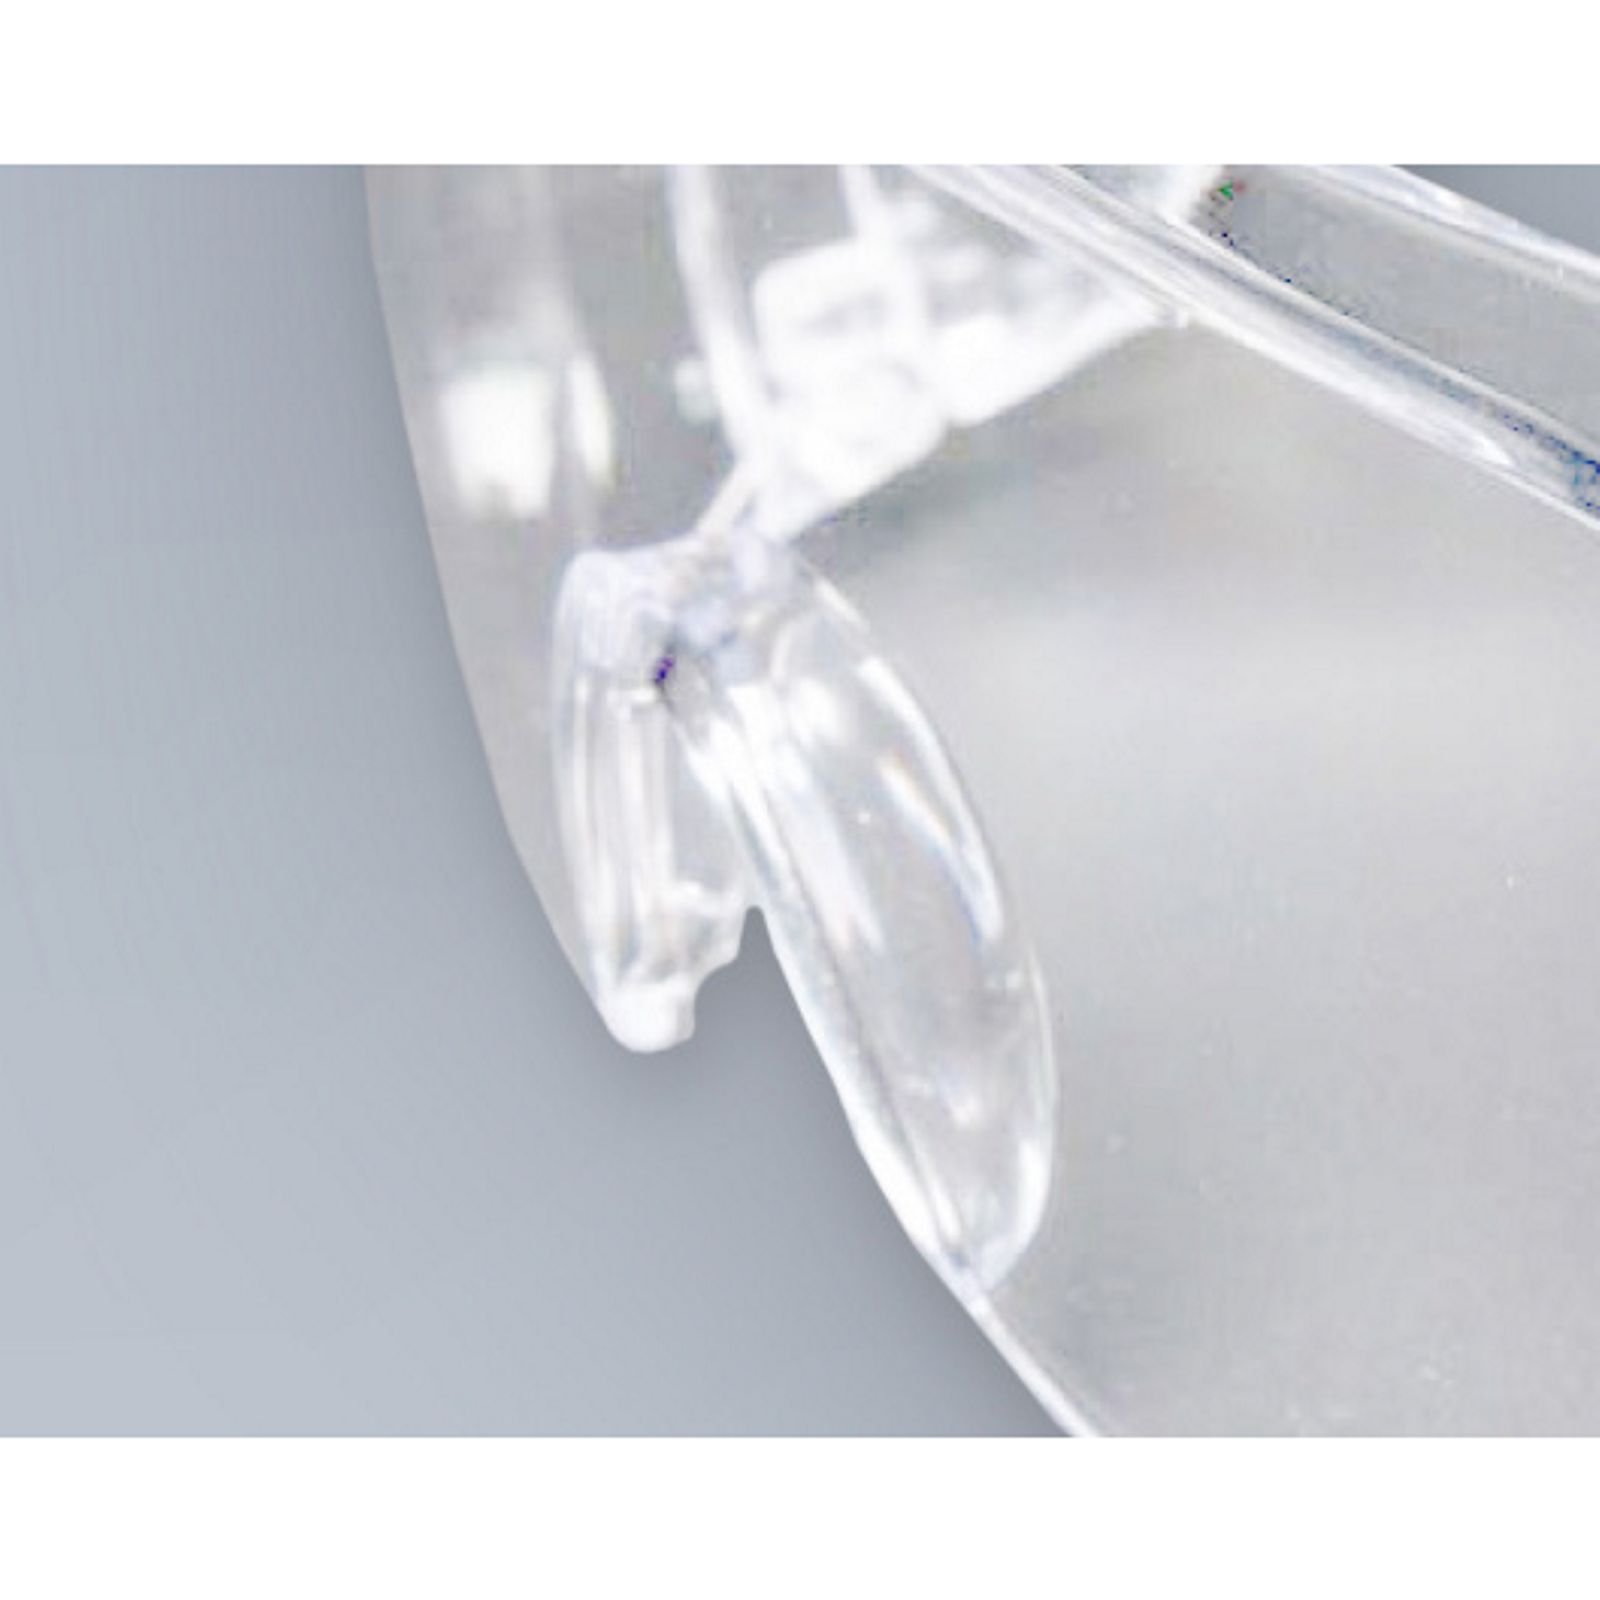 Vollsicht Schutzbrille Polycarbonat spritzfest schlagfest Antifog 100% UV Schutz